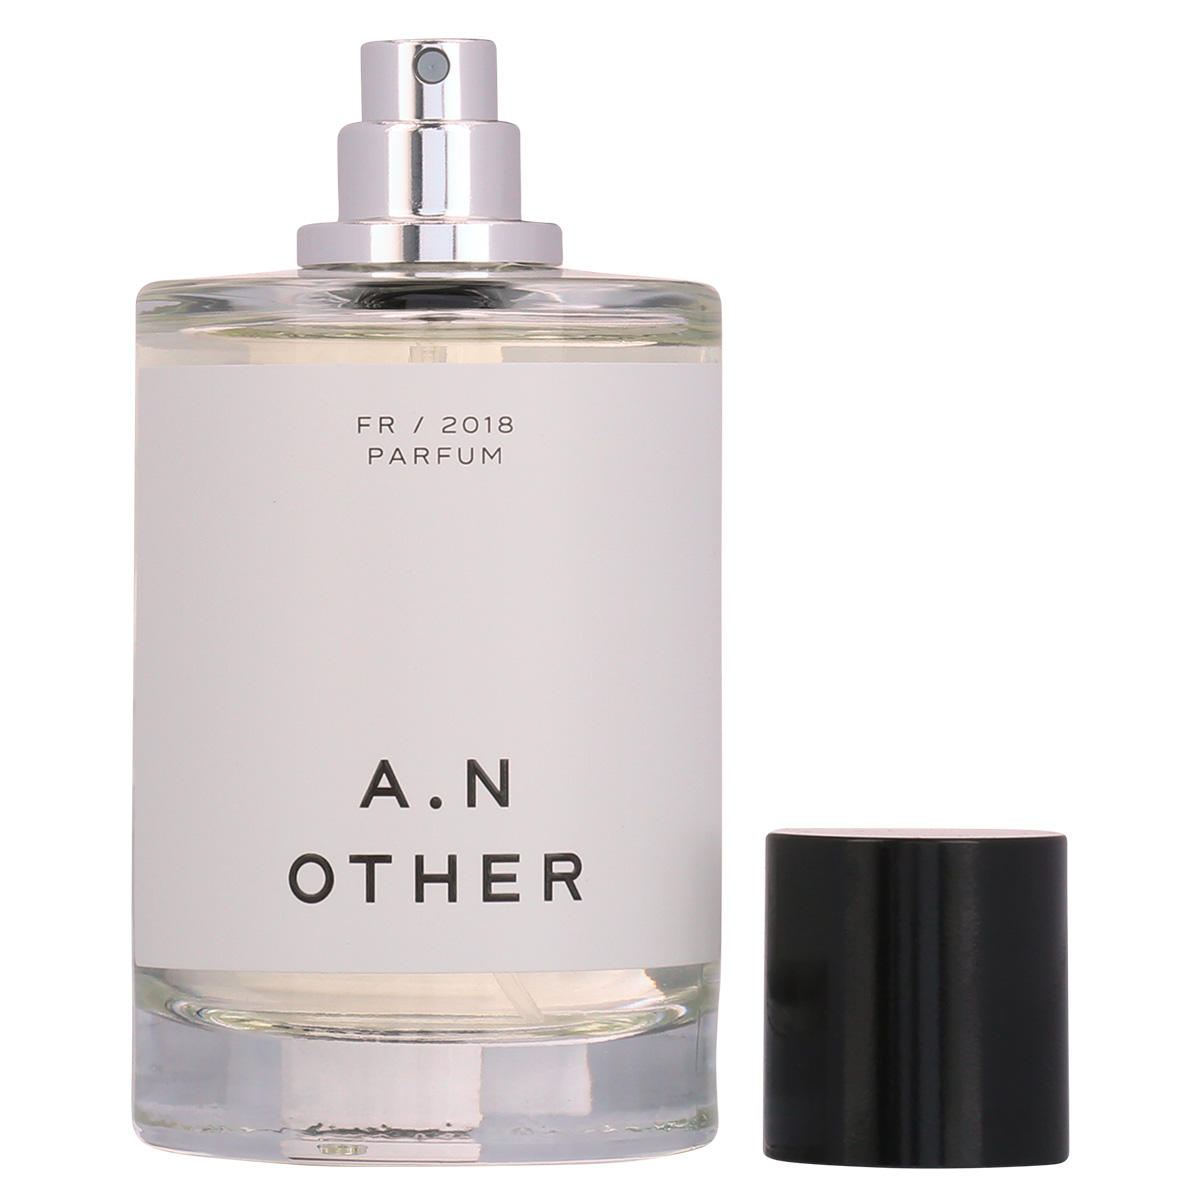 A.N OTHER FR/2018 Eau de Parfum 100 ml - 3